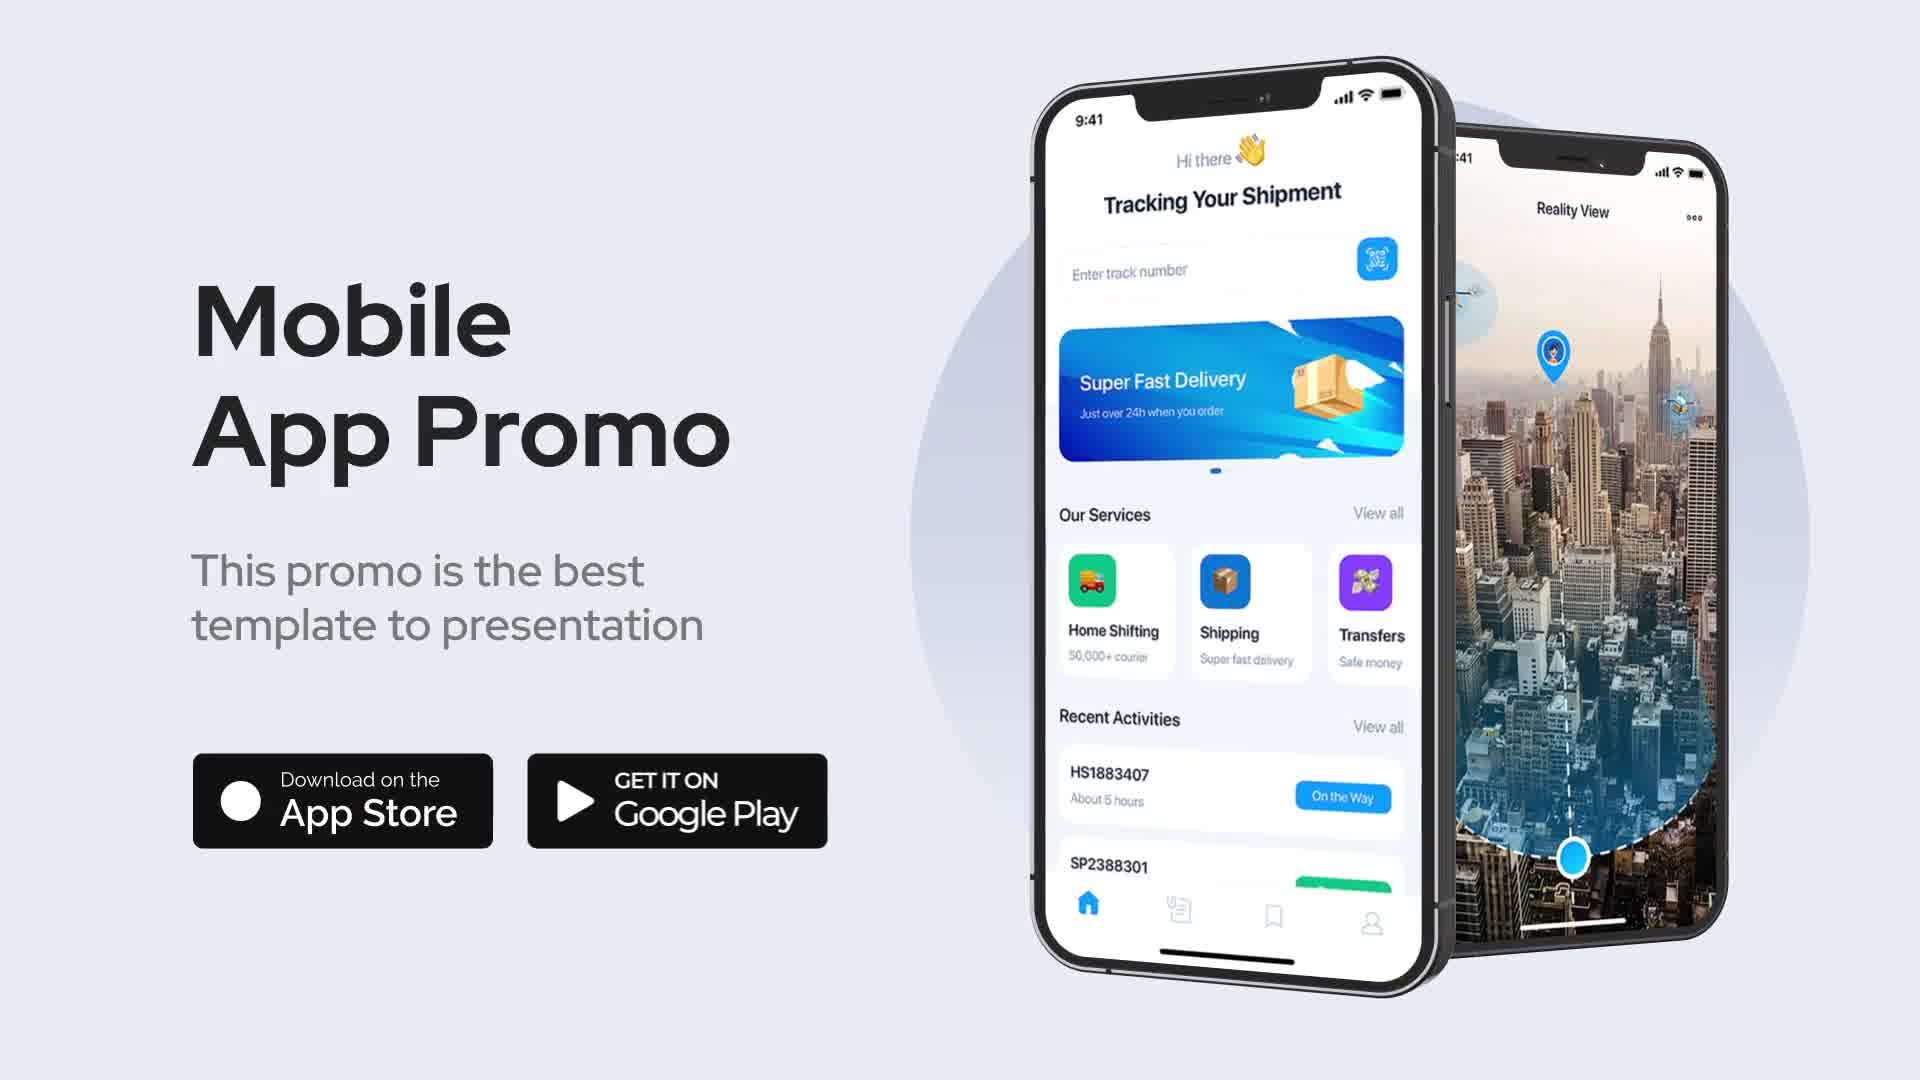 Mobile App Promo for Premiere Pro Videohive 33053696 Premiere Pro Image 11